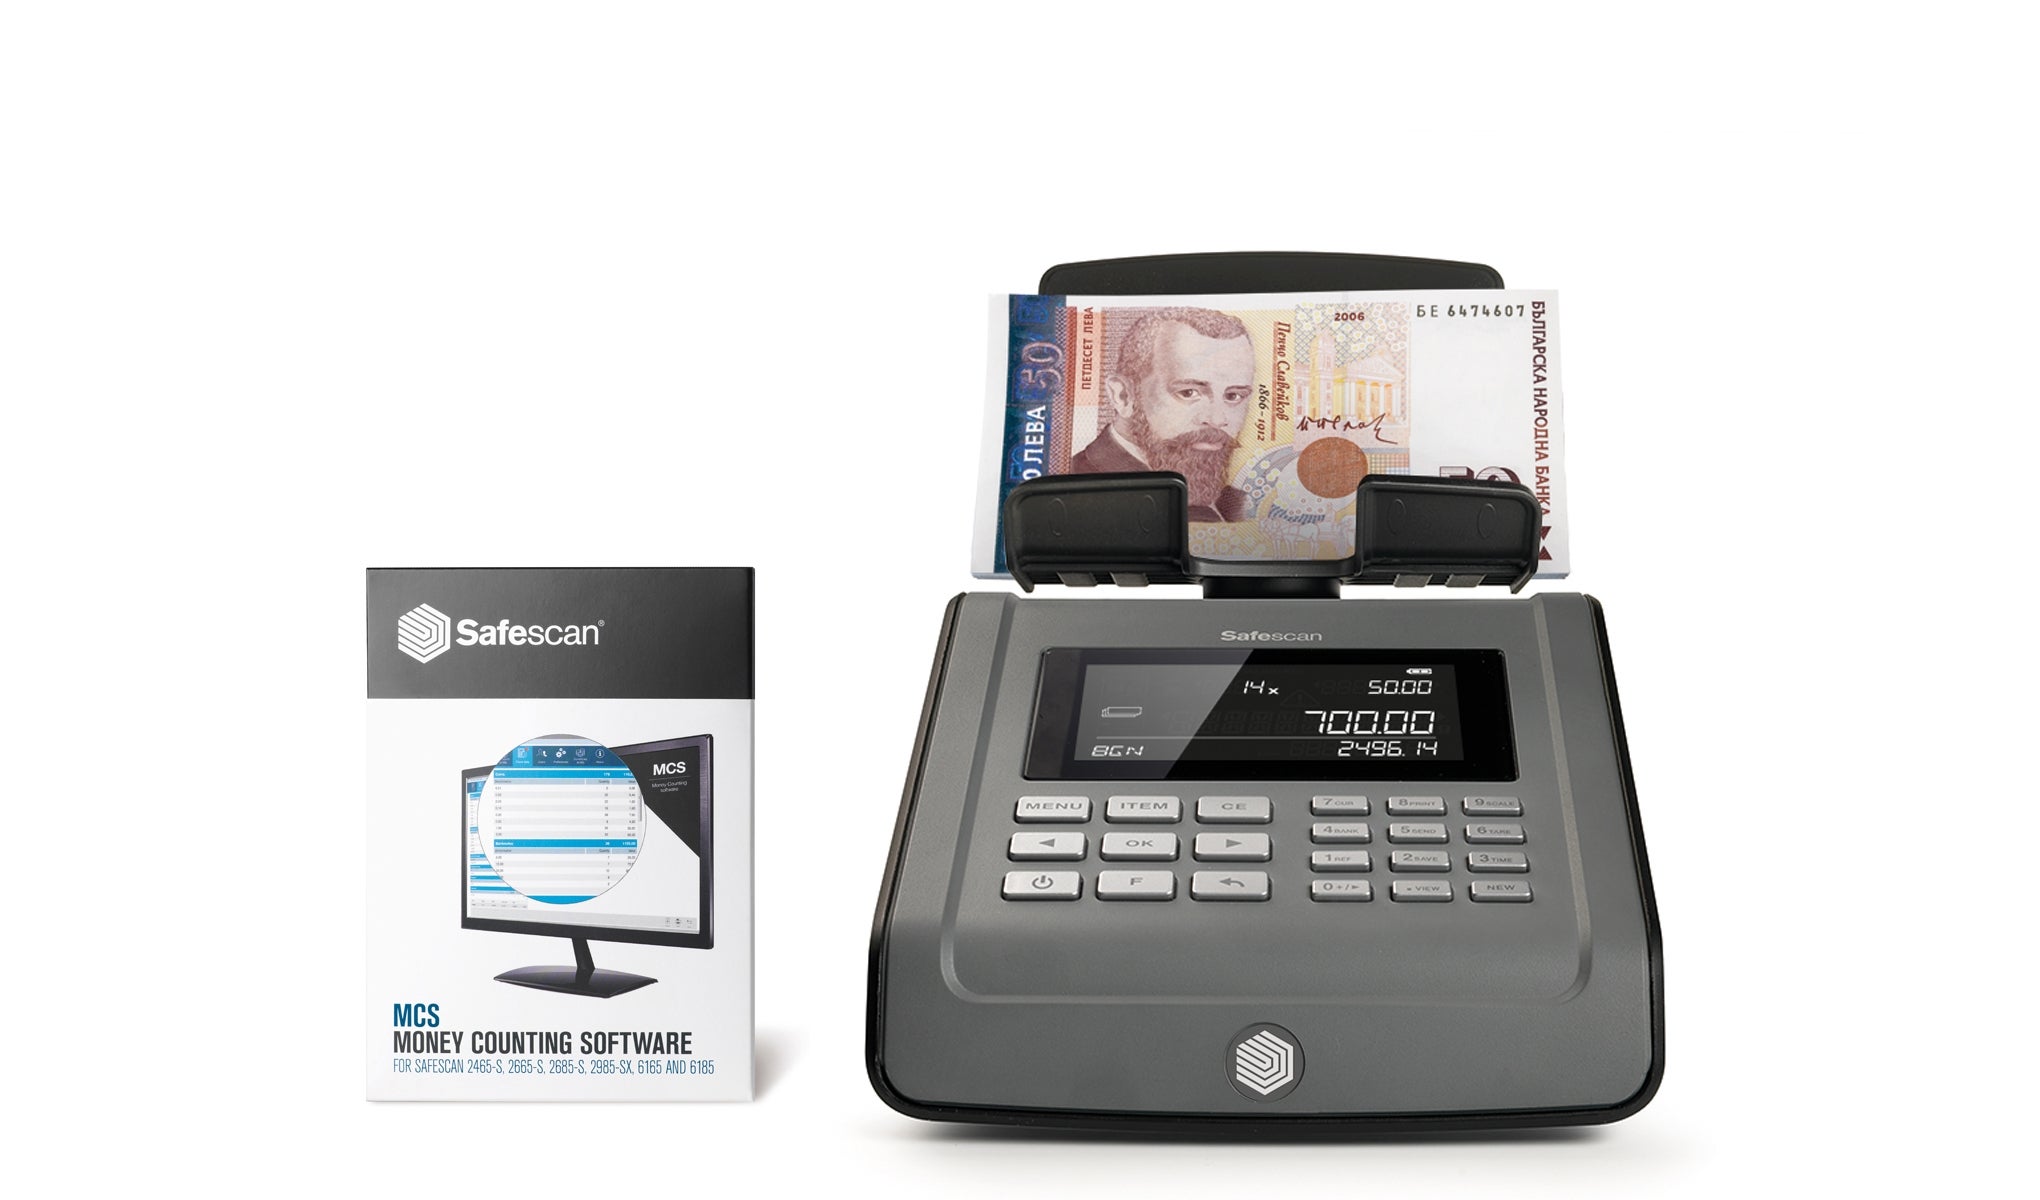 safescan-6185-money-counter-update-software